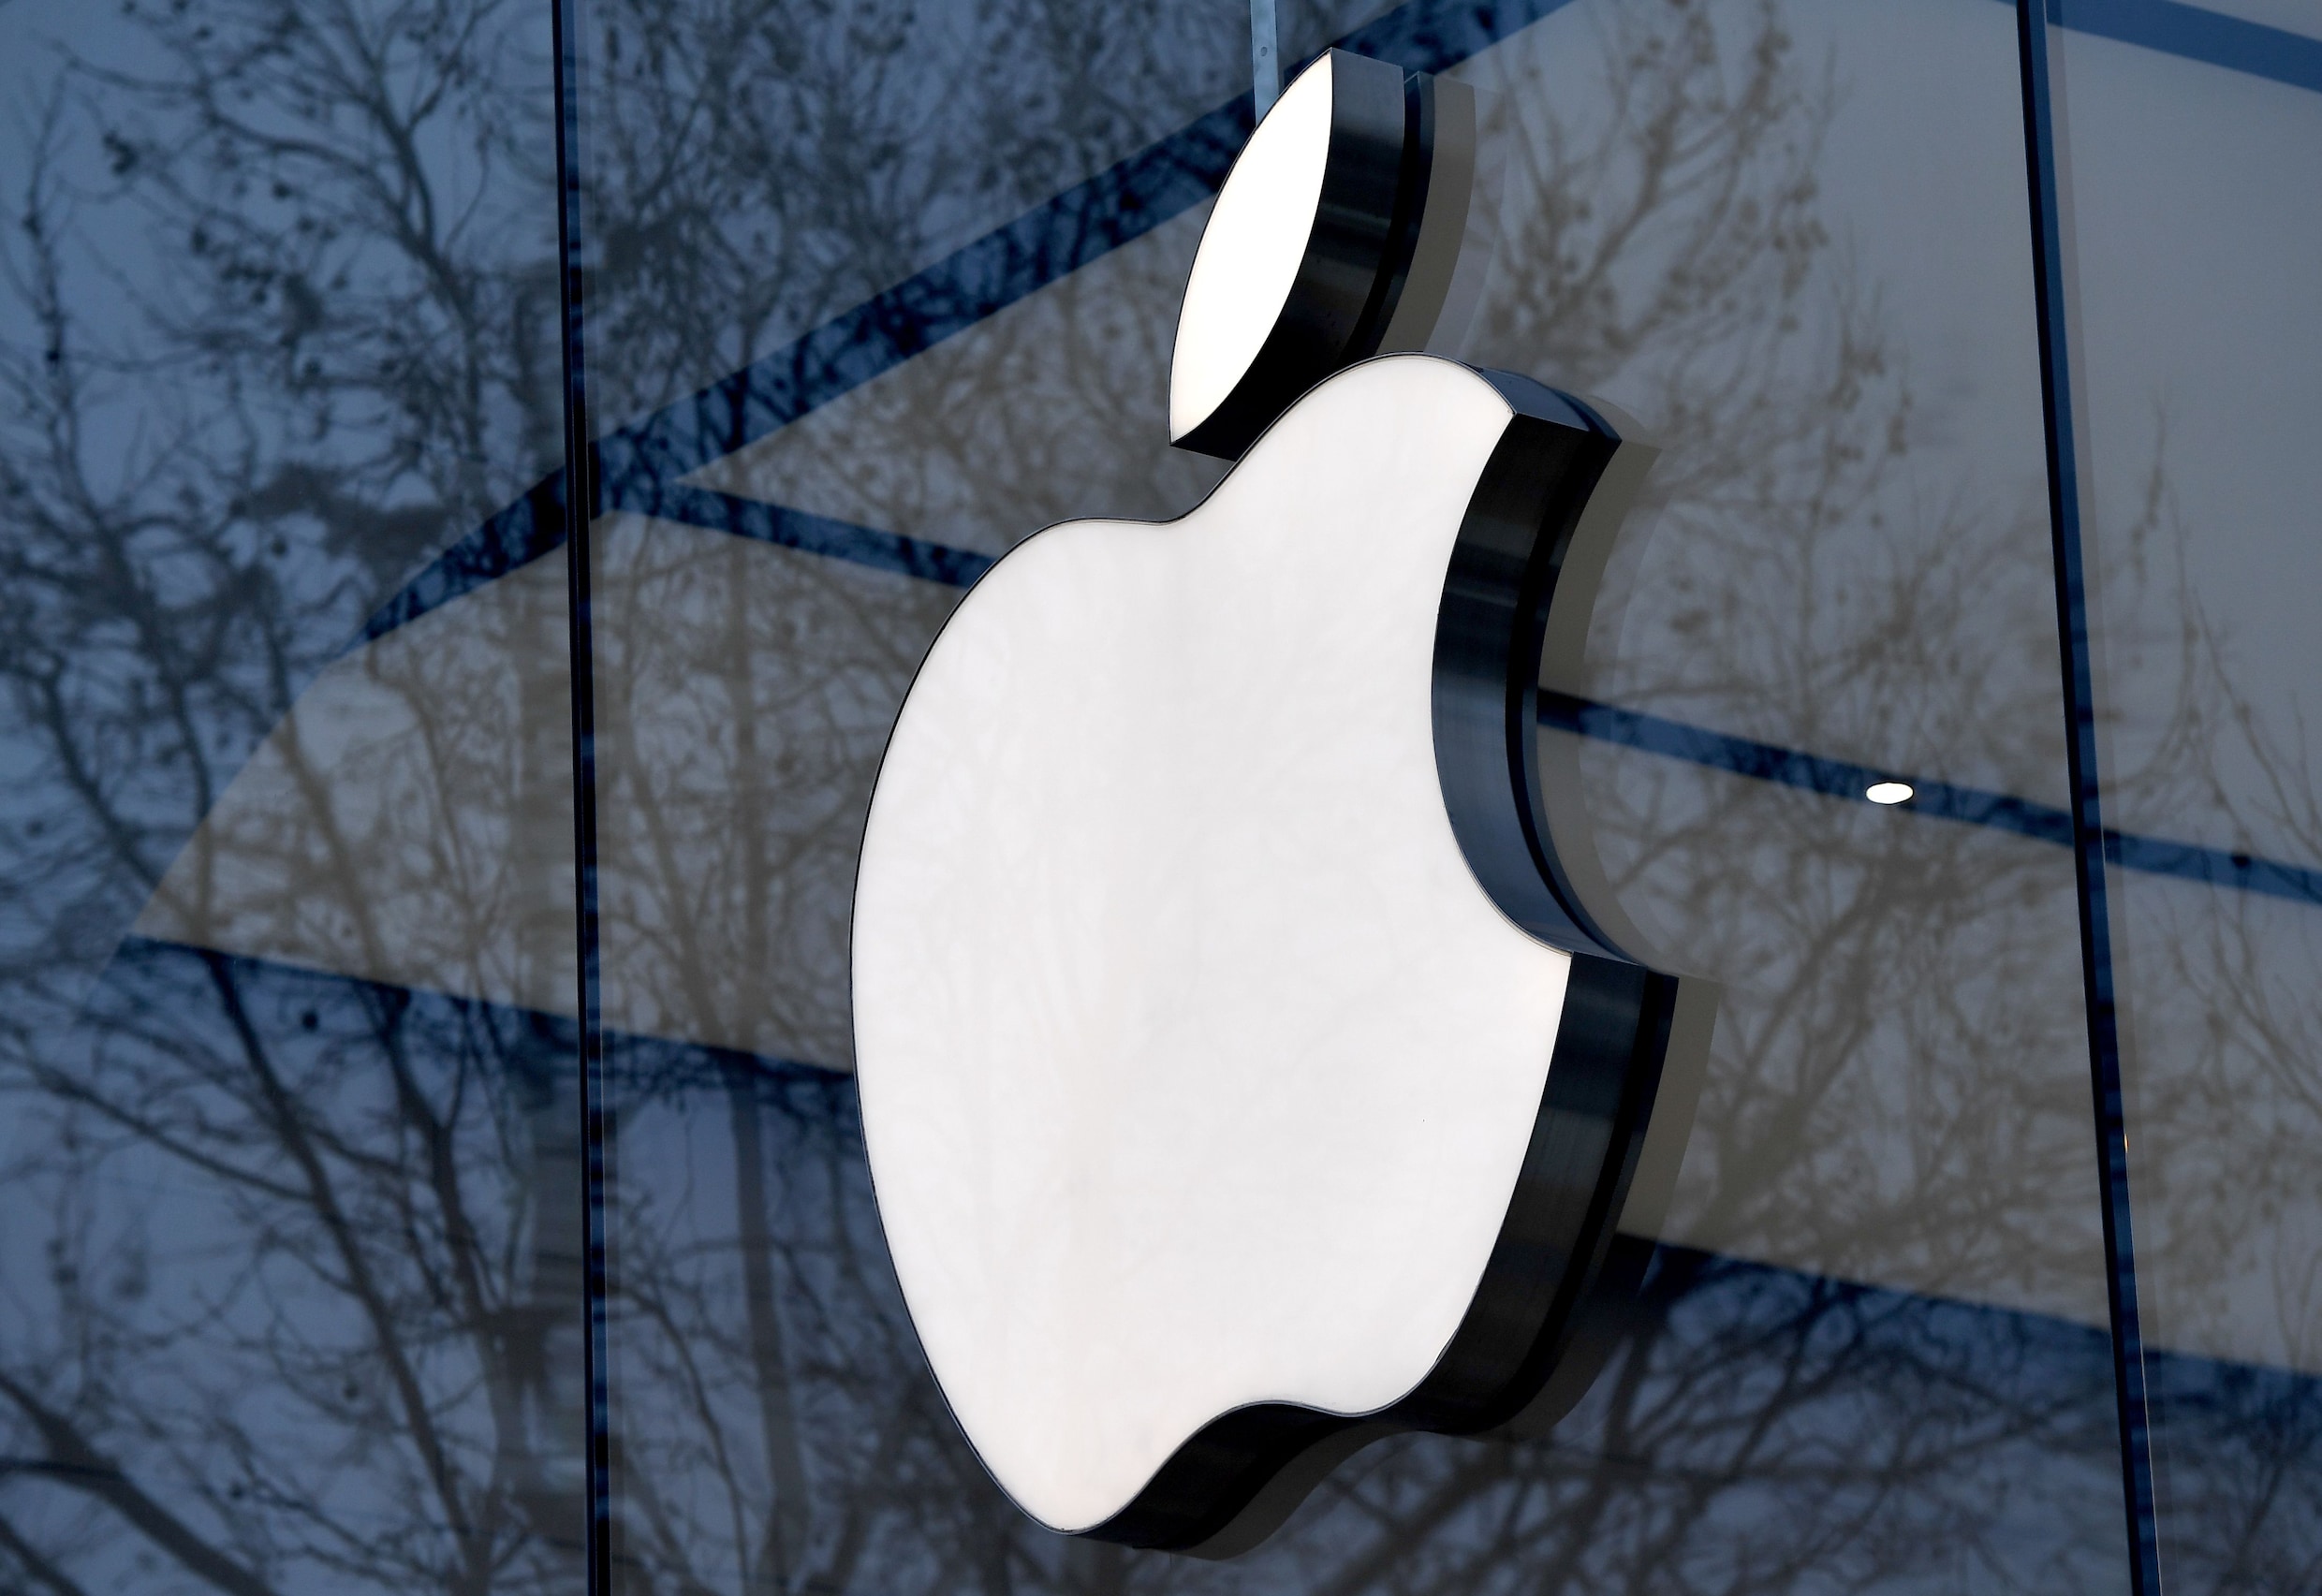 Ex-ingenieur Apple opgepakt omdat "hij geheimen wou doorgeven aan Chinees bedrijf"